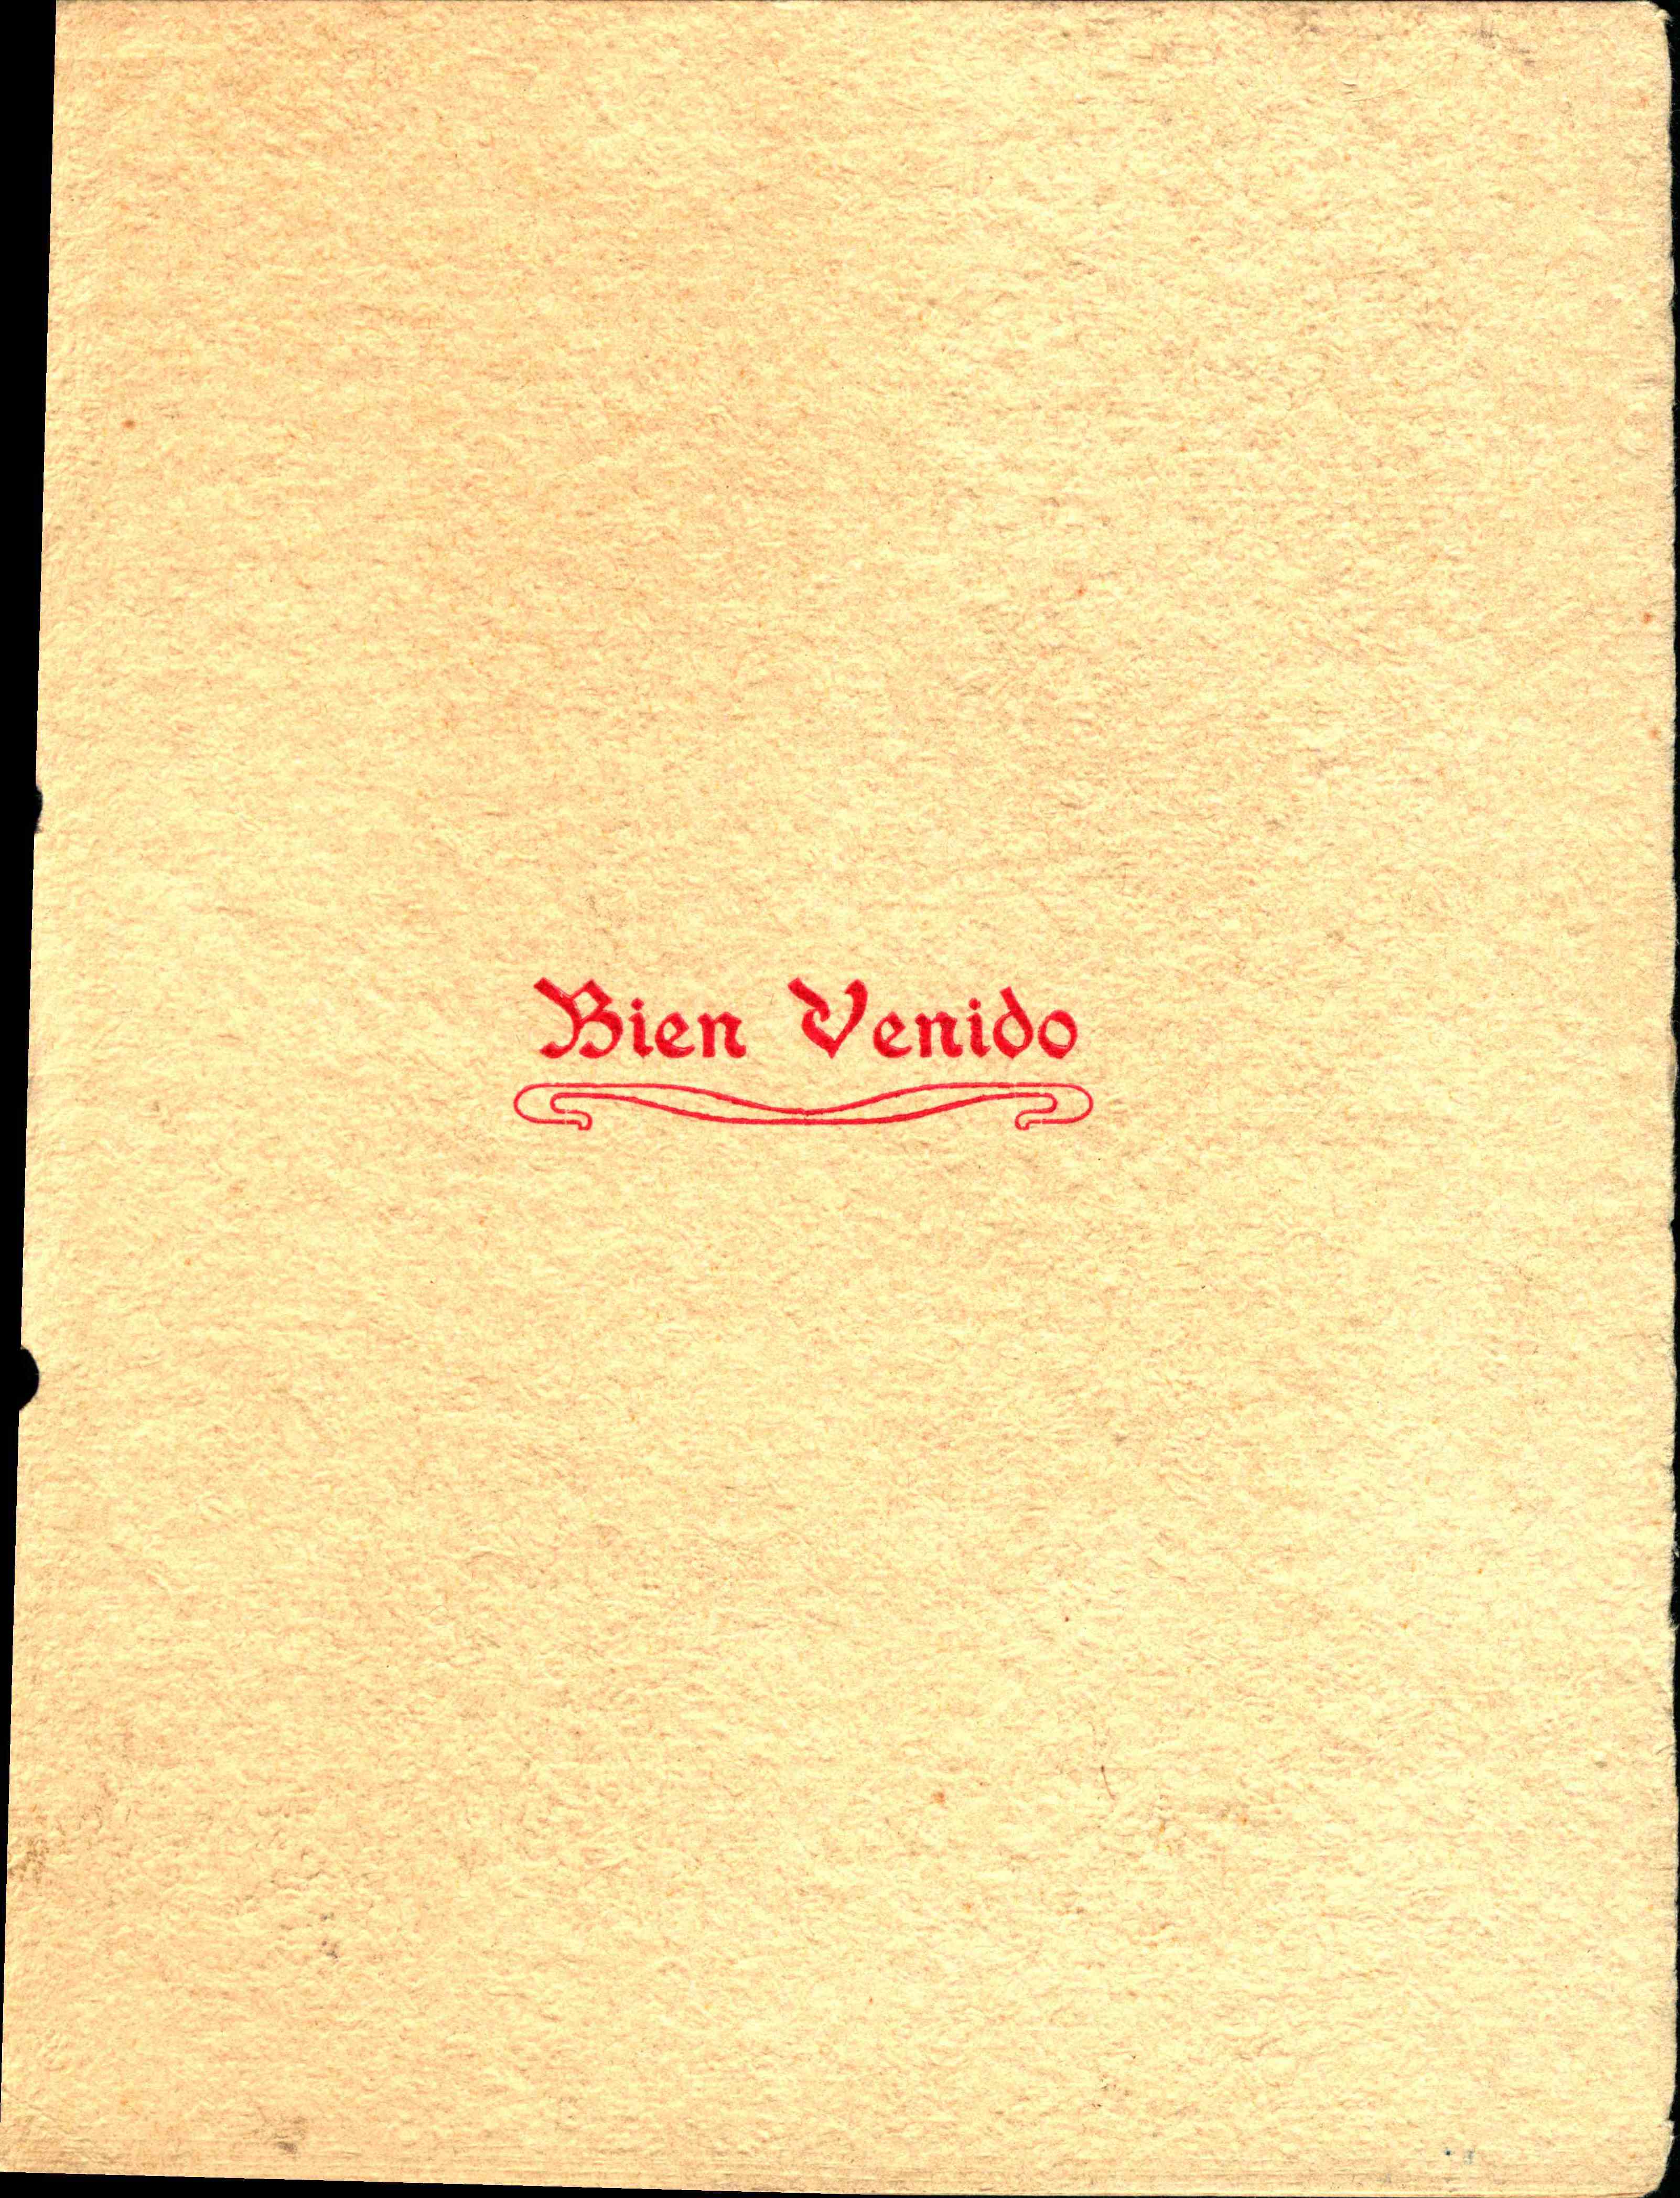 Bien Venido written in red ink